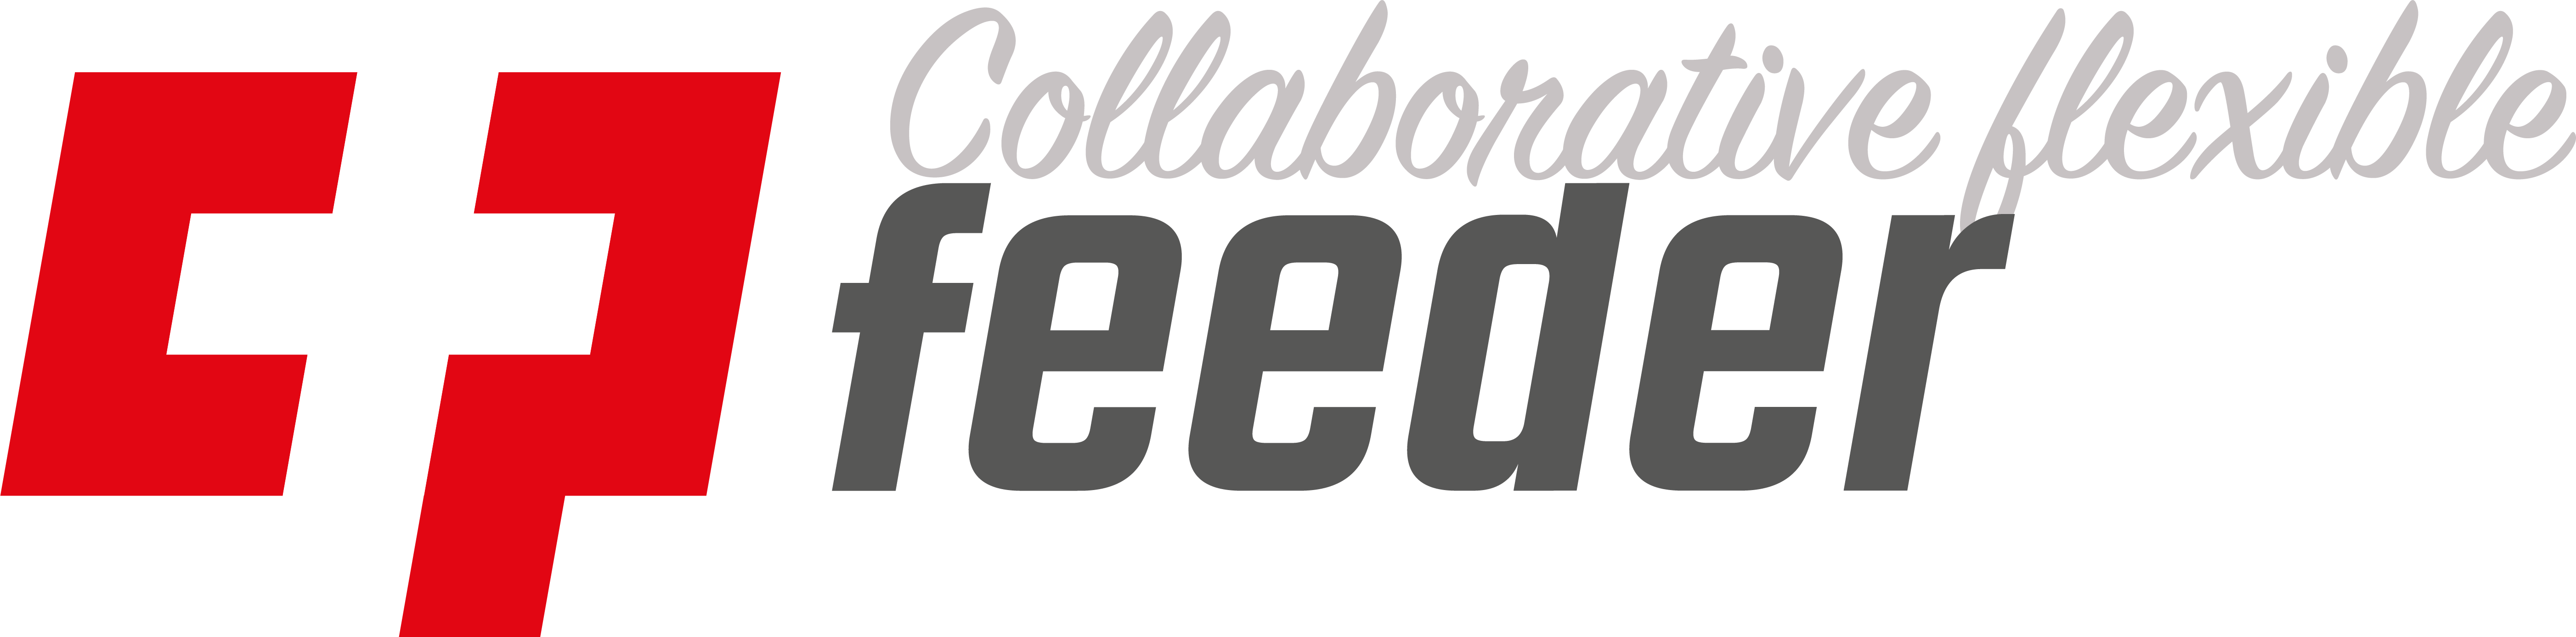 CP collaborative flexible feeder